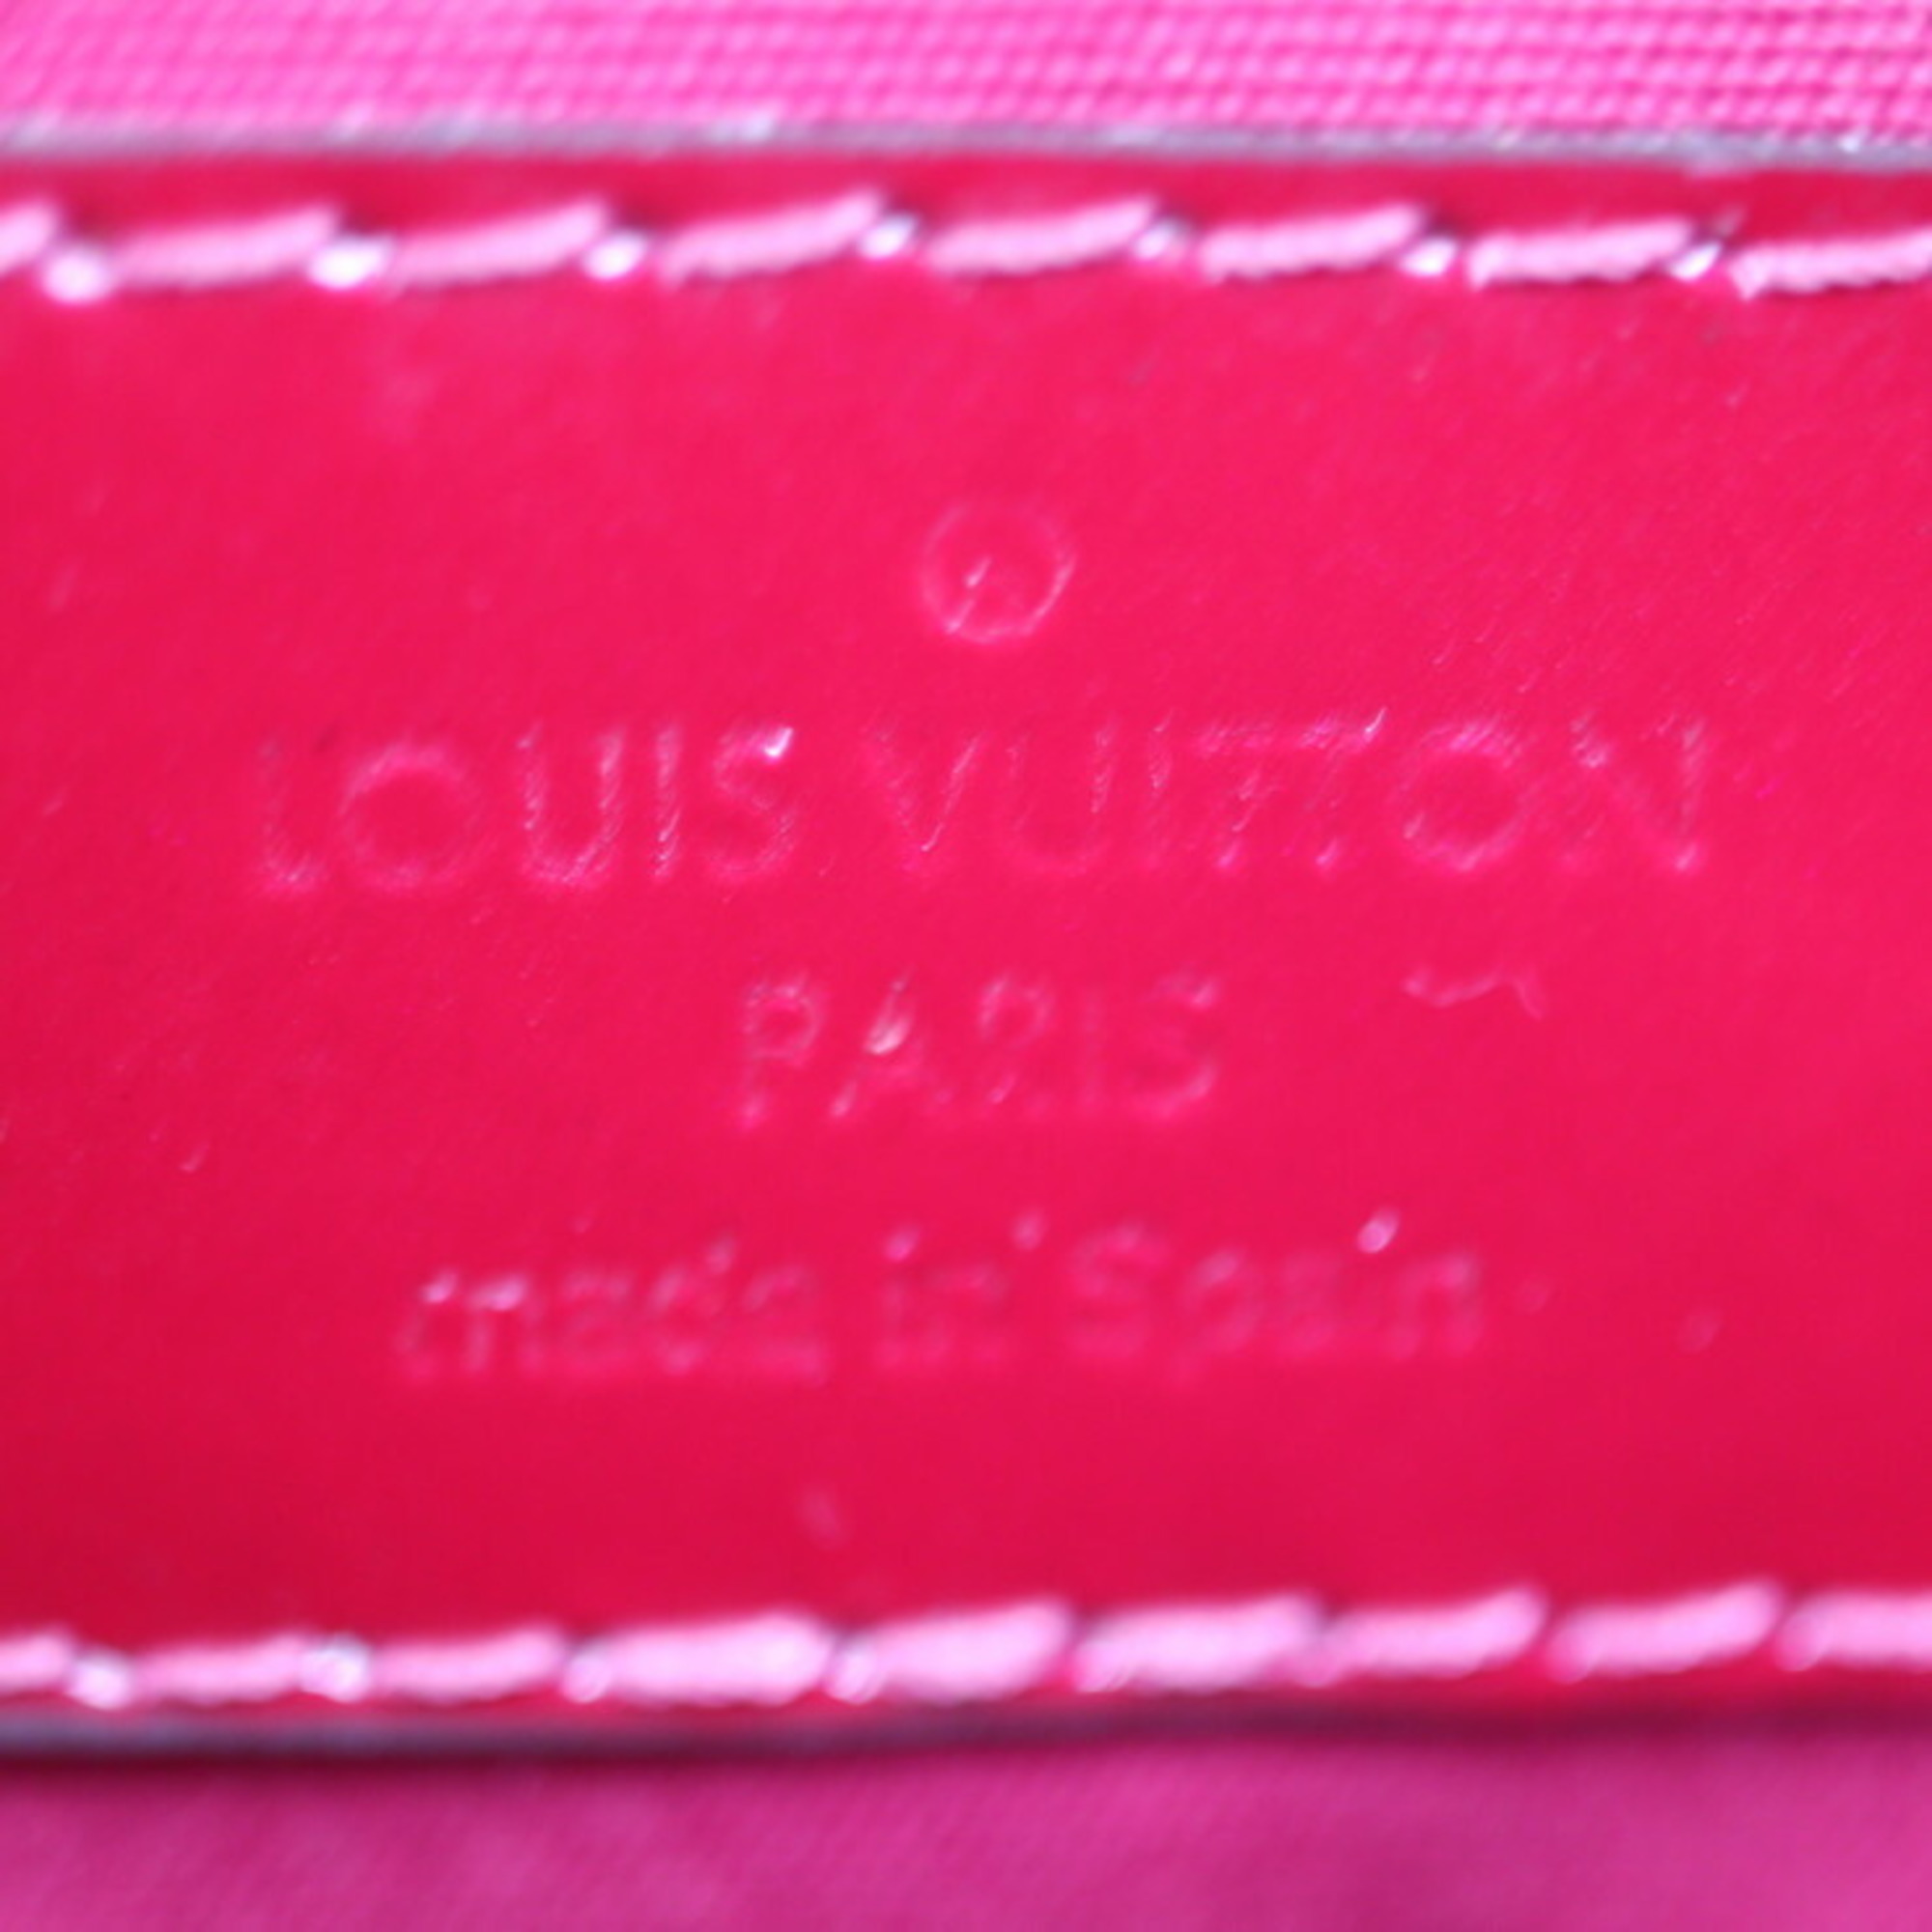 LOUIS VUITTON Louis Vuitton Montaigne BB Handbag M50172 Monogram Vernis Rose Indien Shoulder Bag